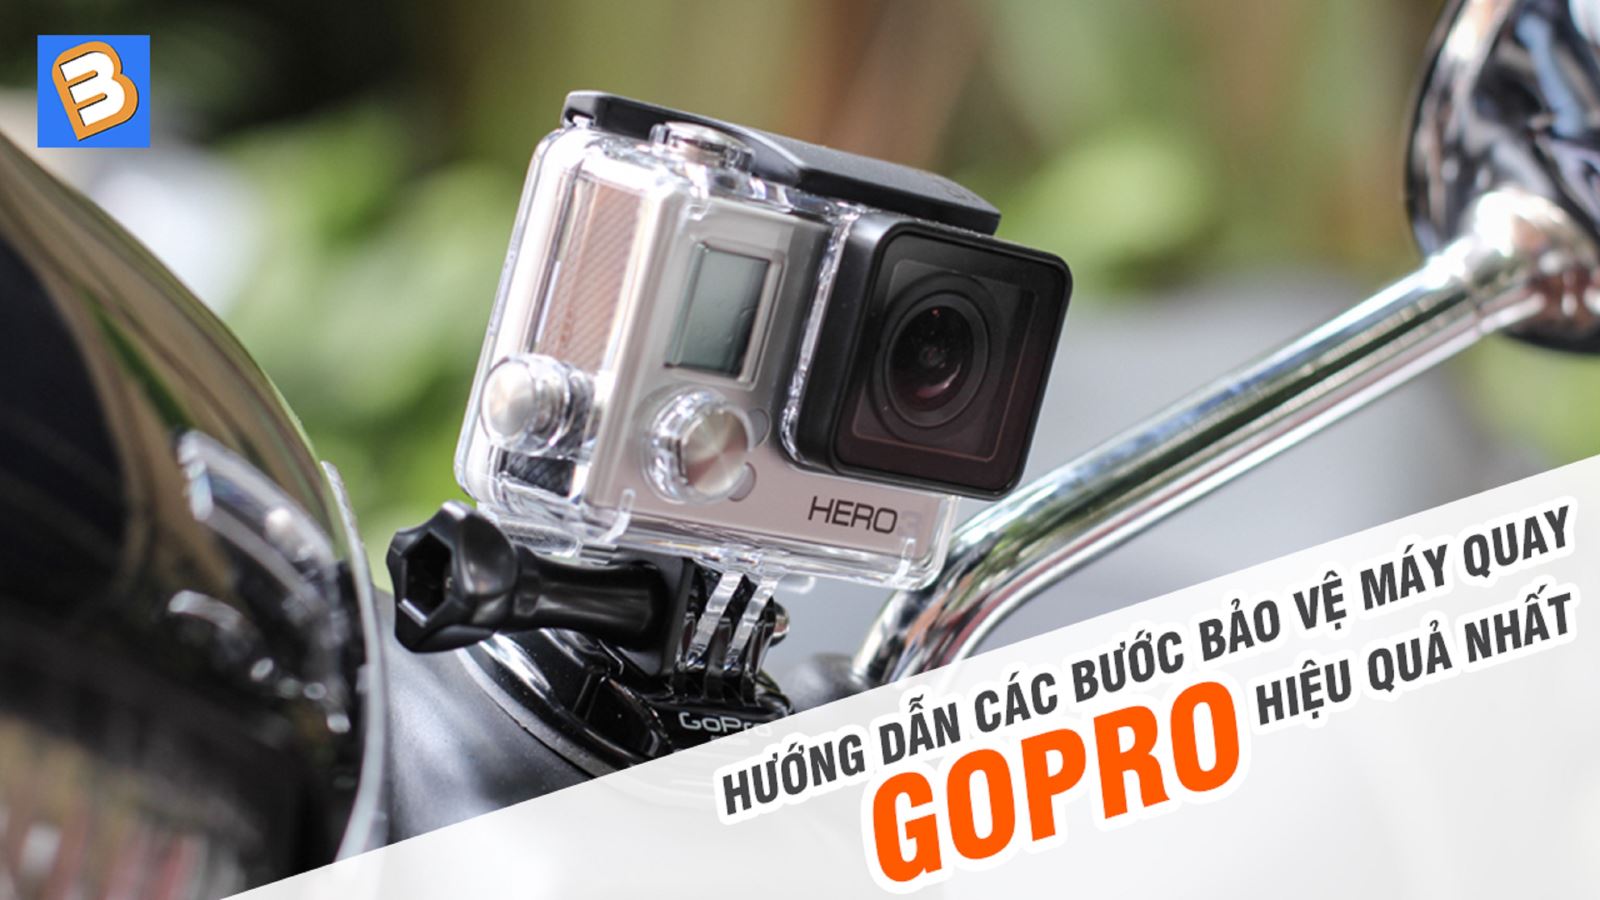 Hướng dẫn các bước bảo vệ máy quay Gopro hiệu quả nhất